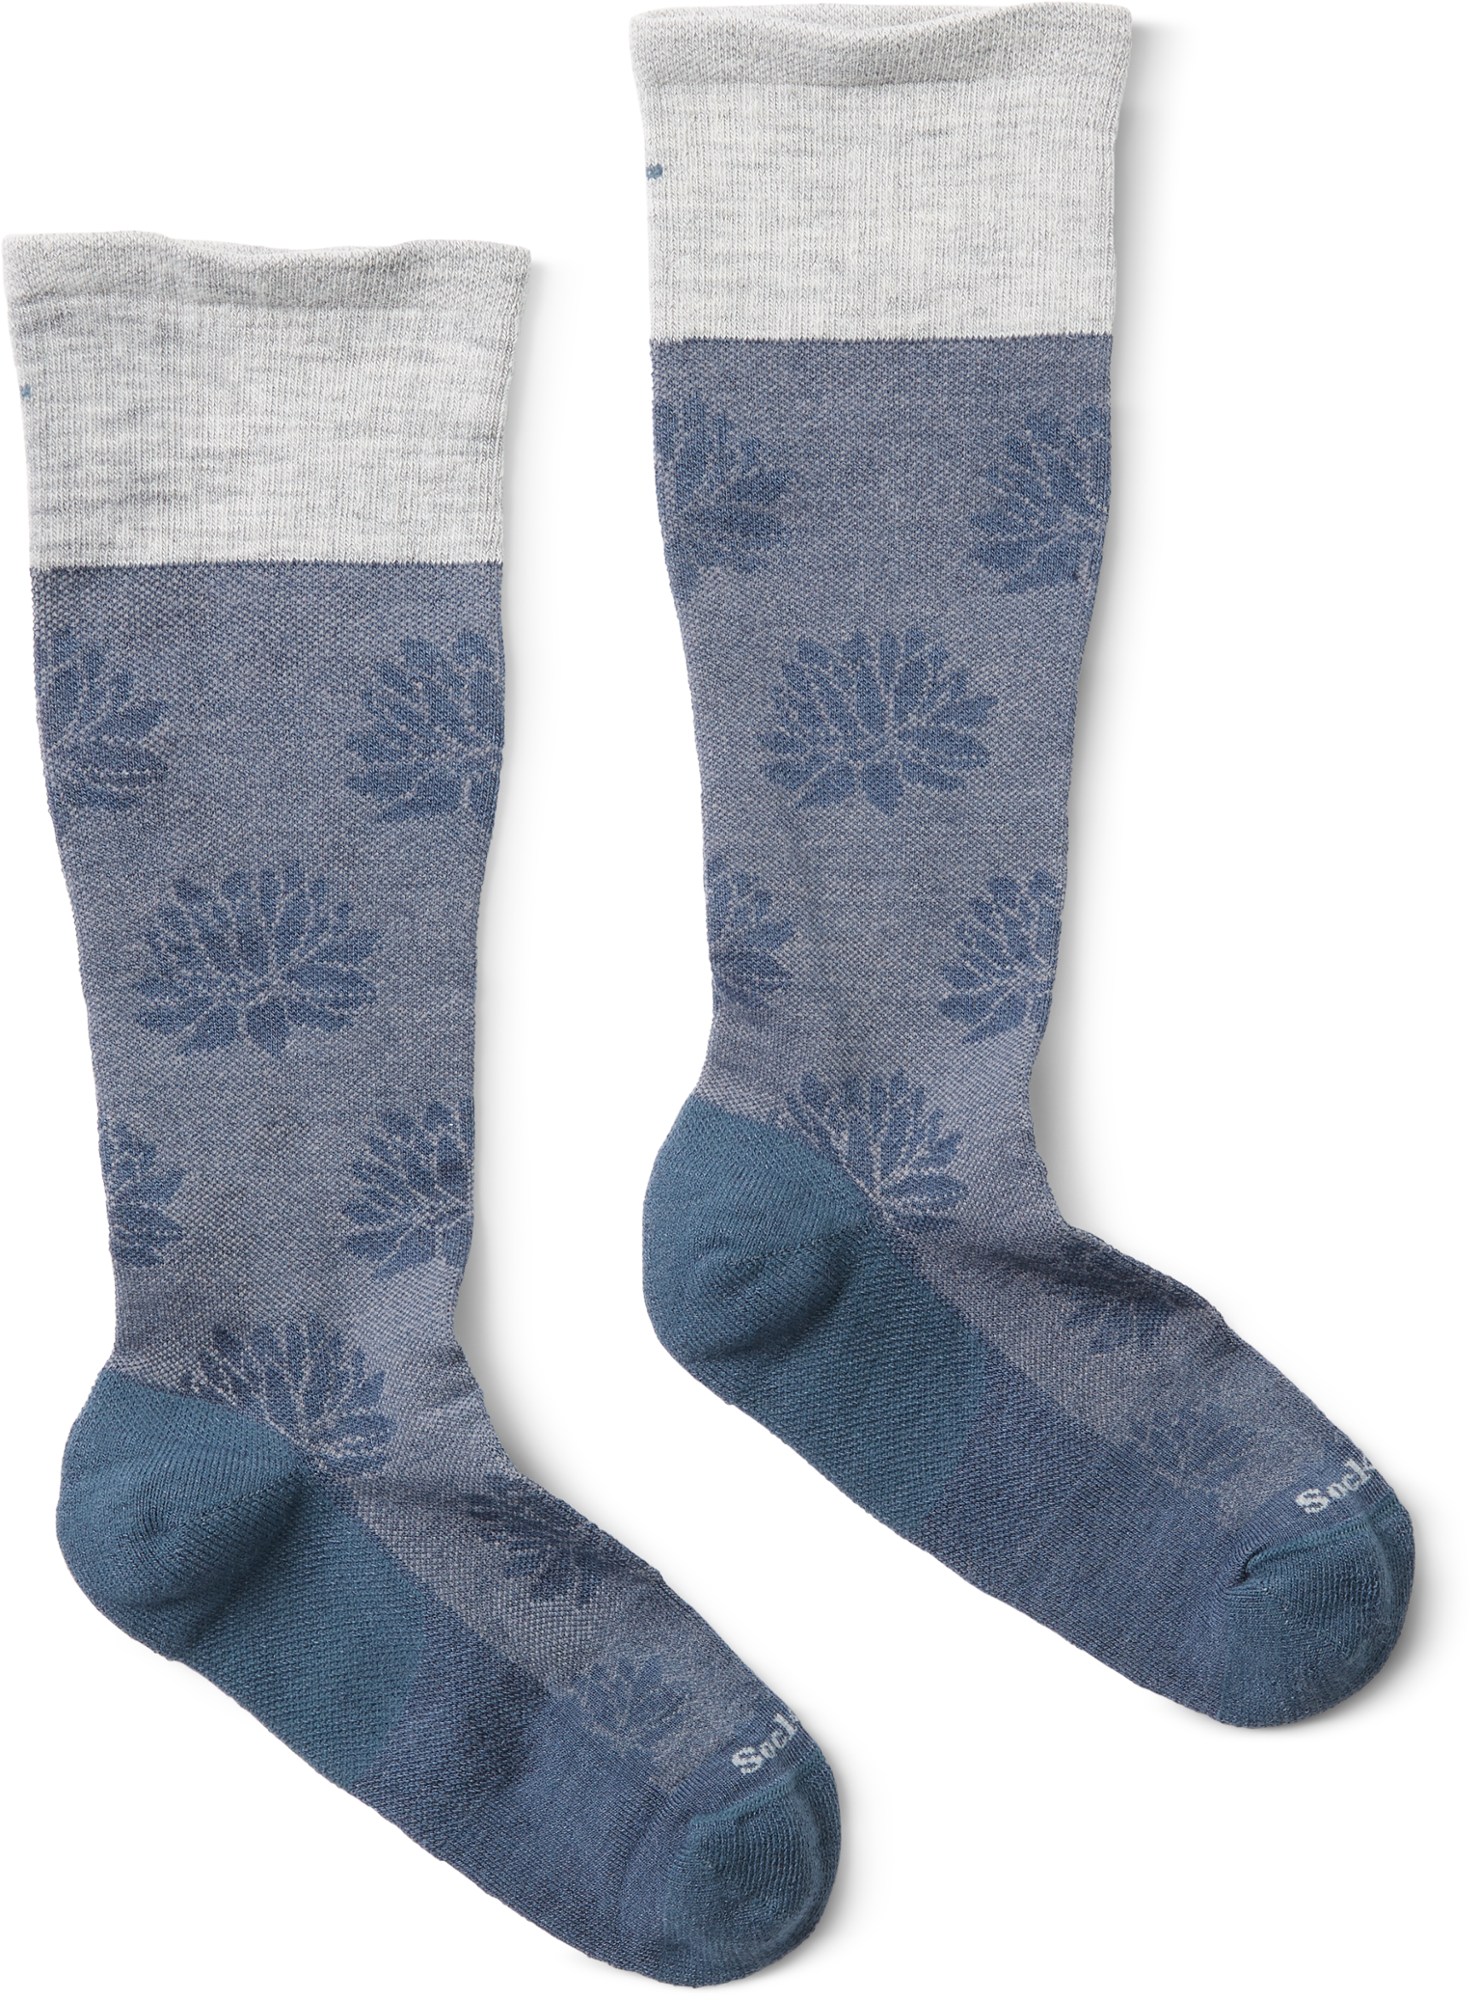 Компрессионные носки Lotus Lift Firm — женские Sockwell, синий